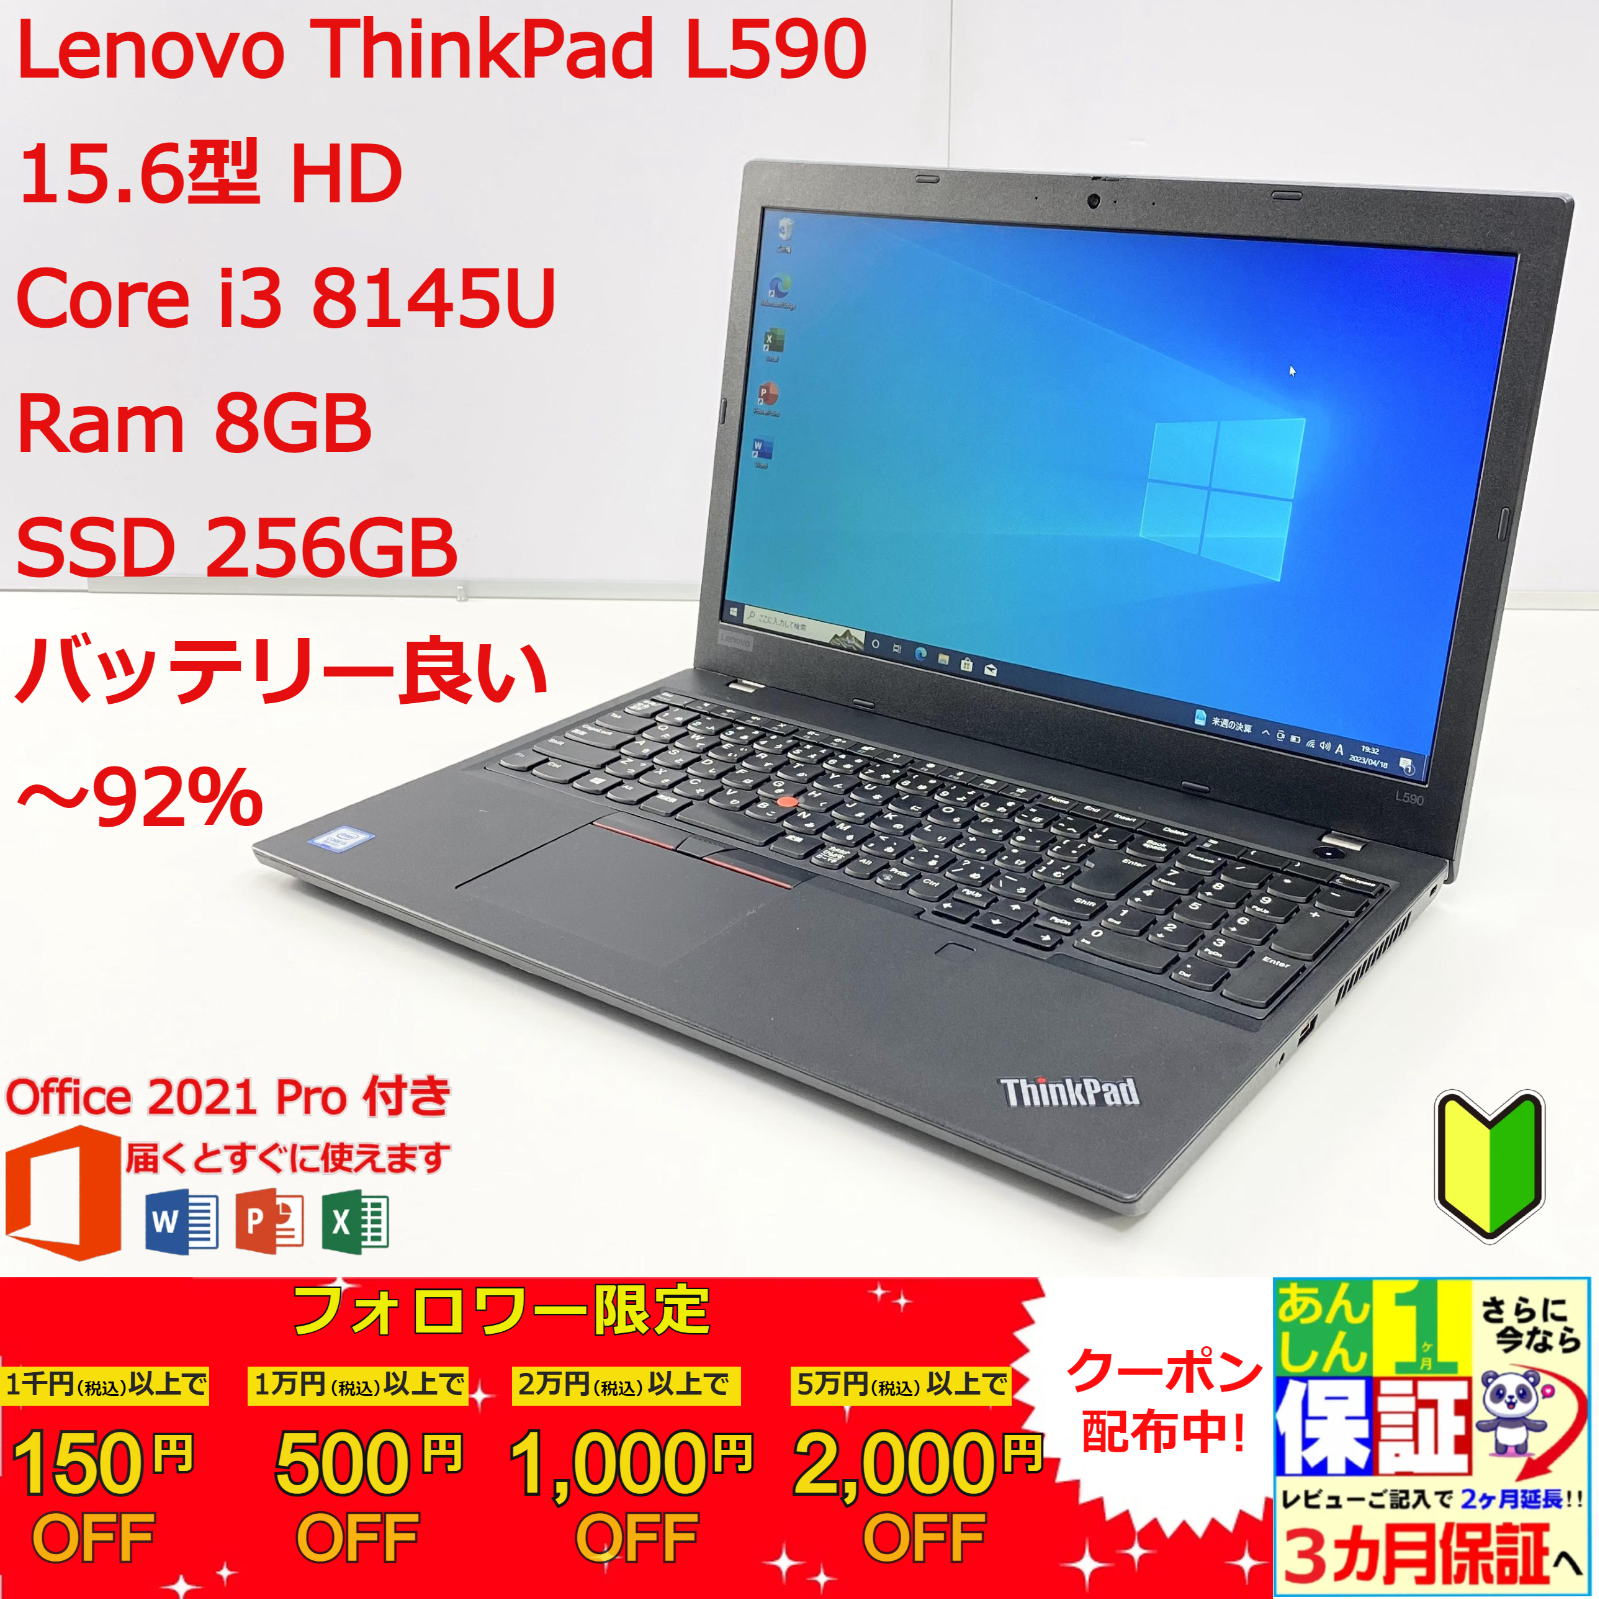 レノボ Thinkpad L590 15.6型 FHD Office2021良品